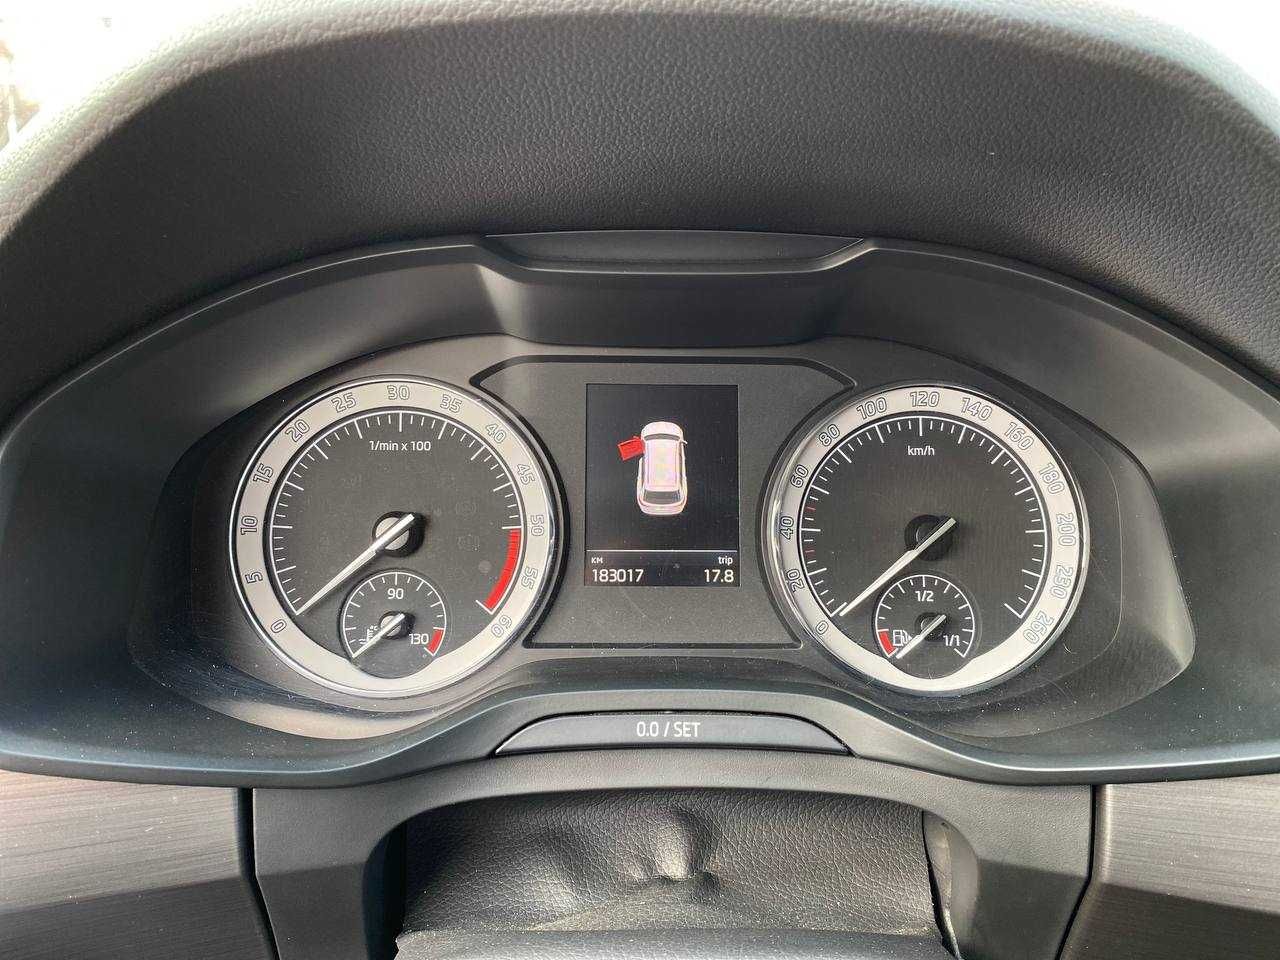 Авто Skoda Kodiaq 2019рік, 2.0 дизель,обм, [Перший внесок 20%]